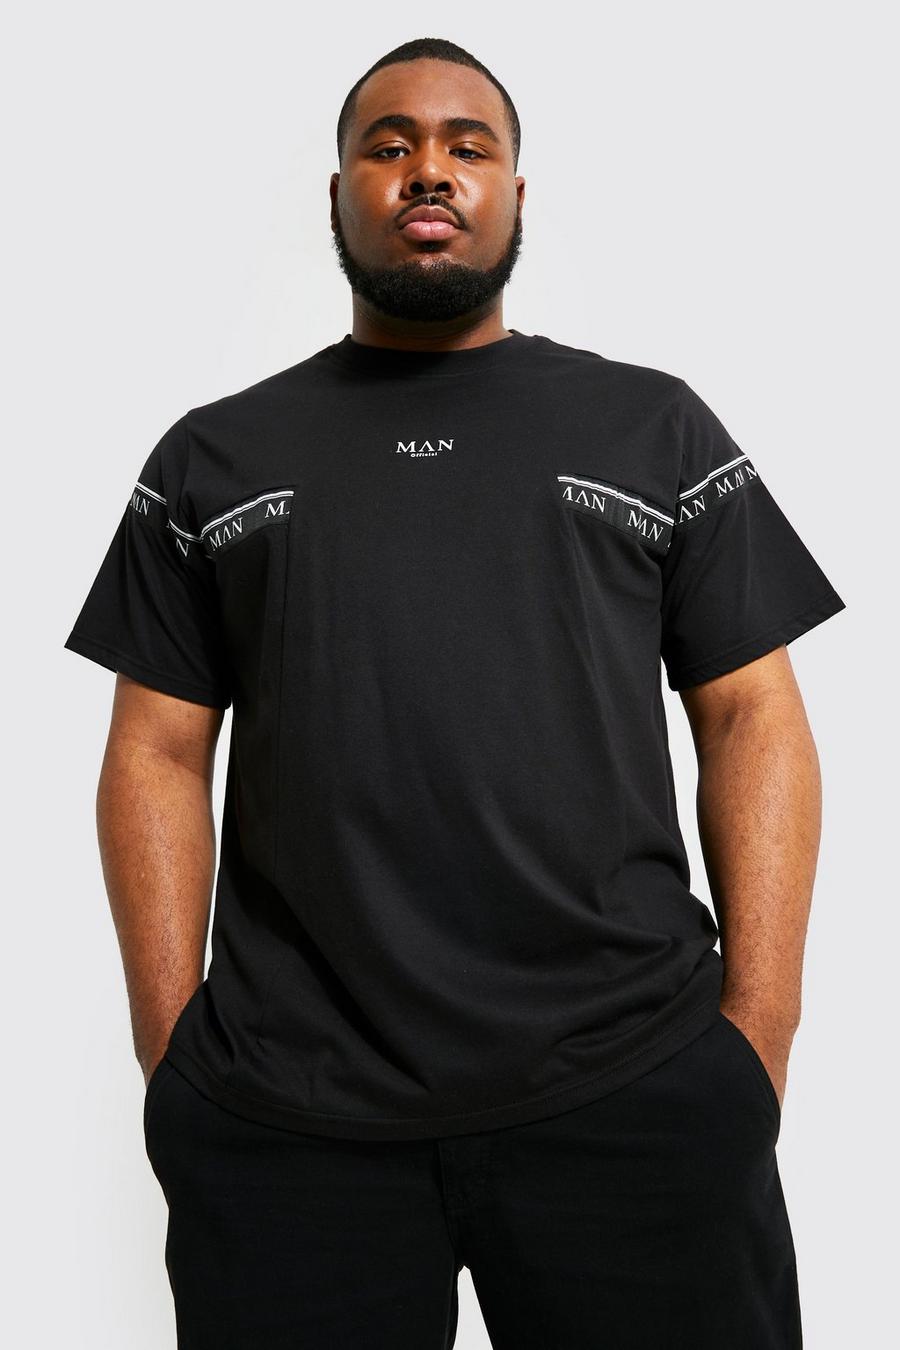 Plus Man Roman T-Shirt mit Streifen, Black schwarz